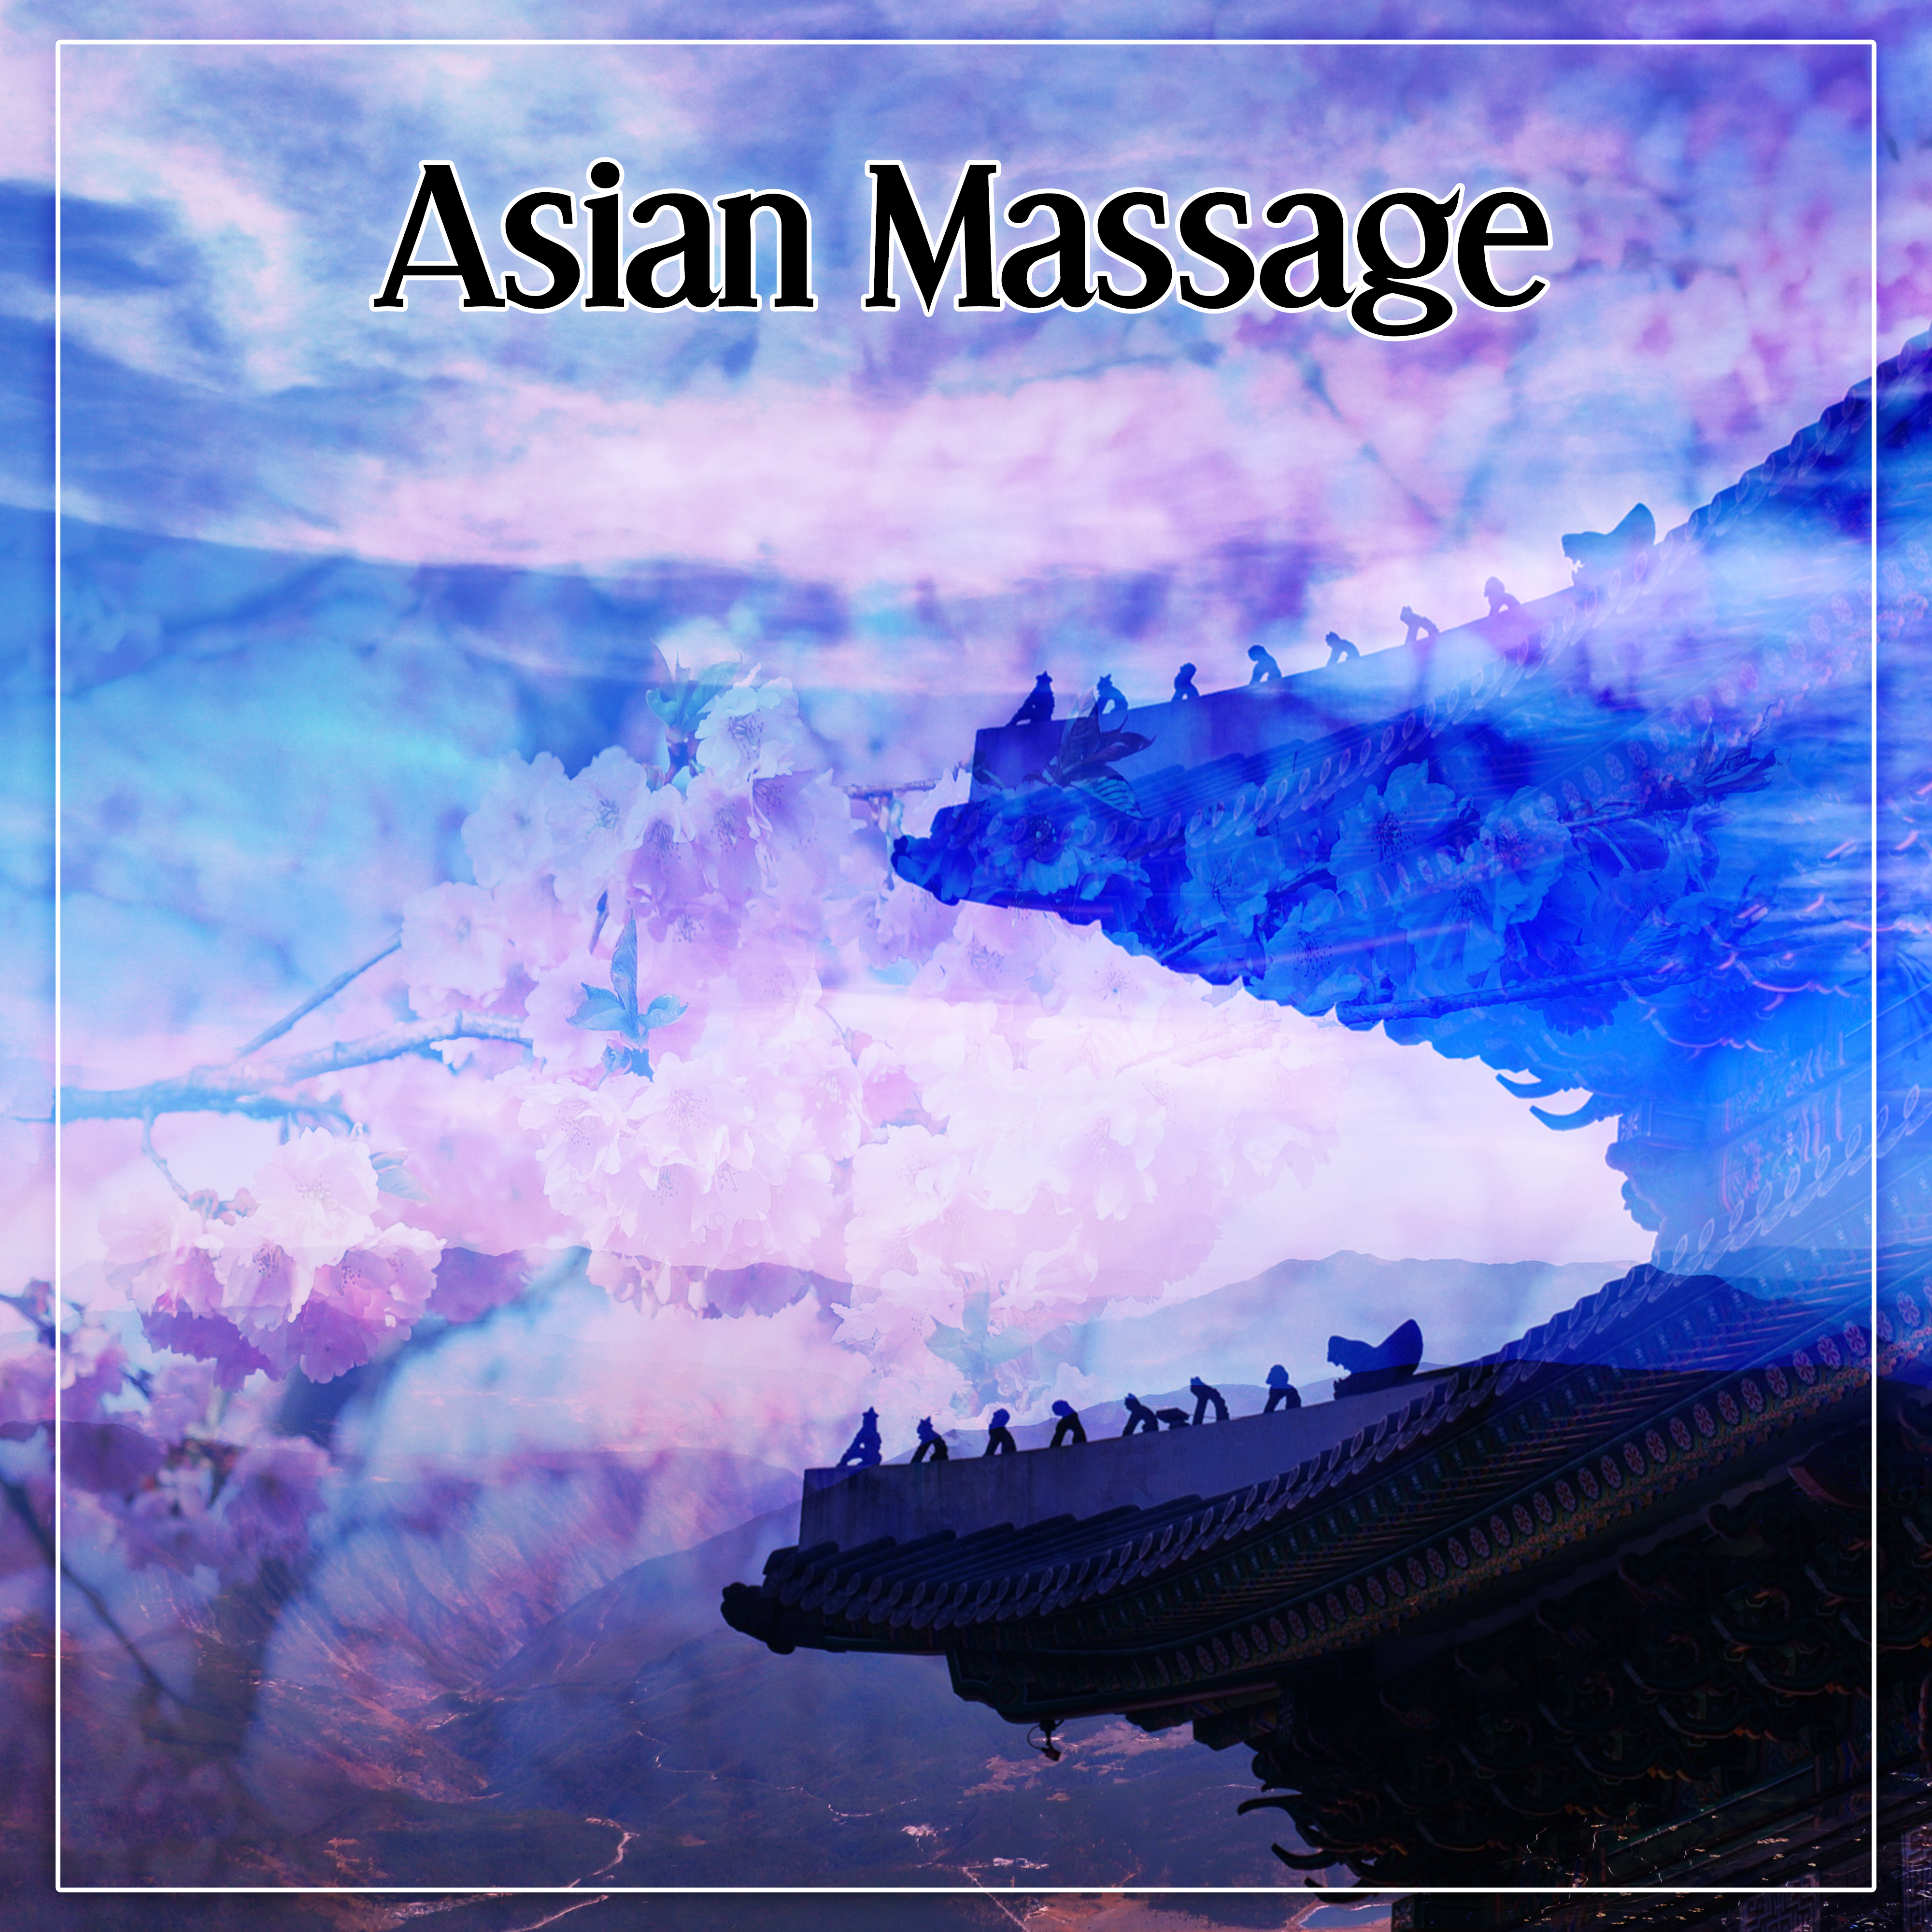 Asian Massage – Deep Relaxing Chinese Music for Spa, Massage, Wellness, Asian Flute, Zen Meditation, Chakra